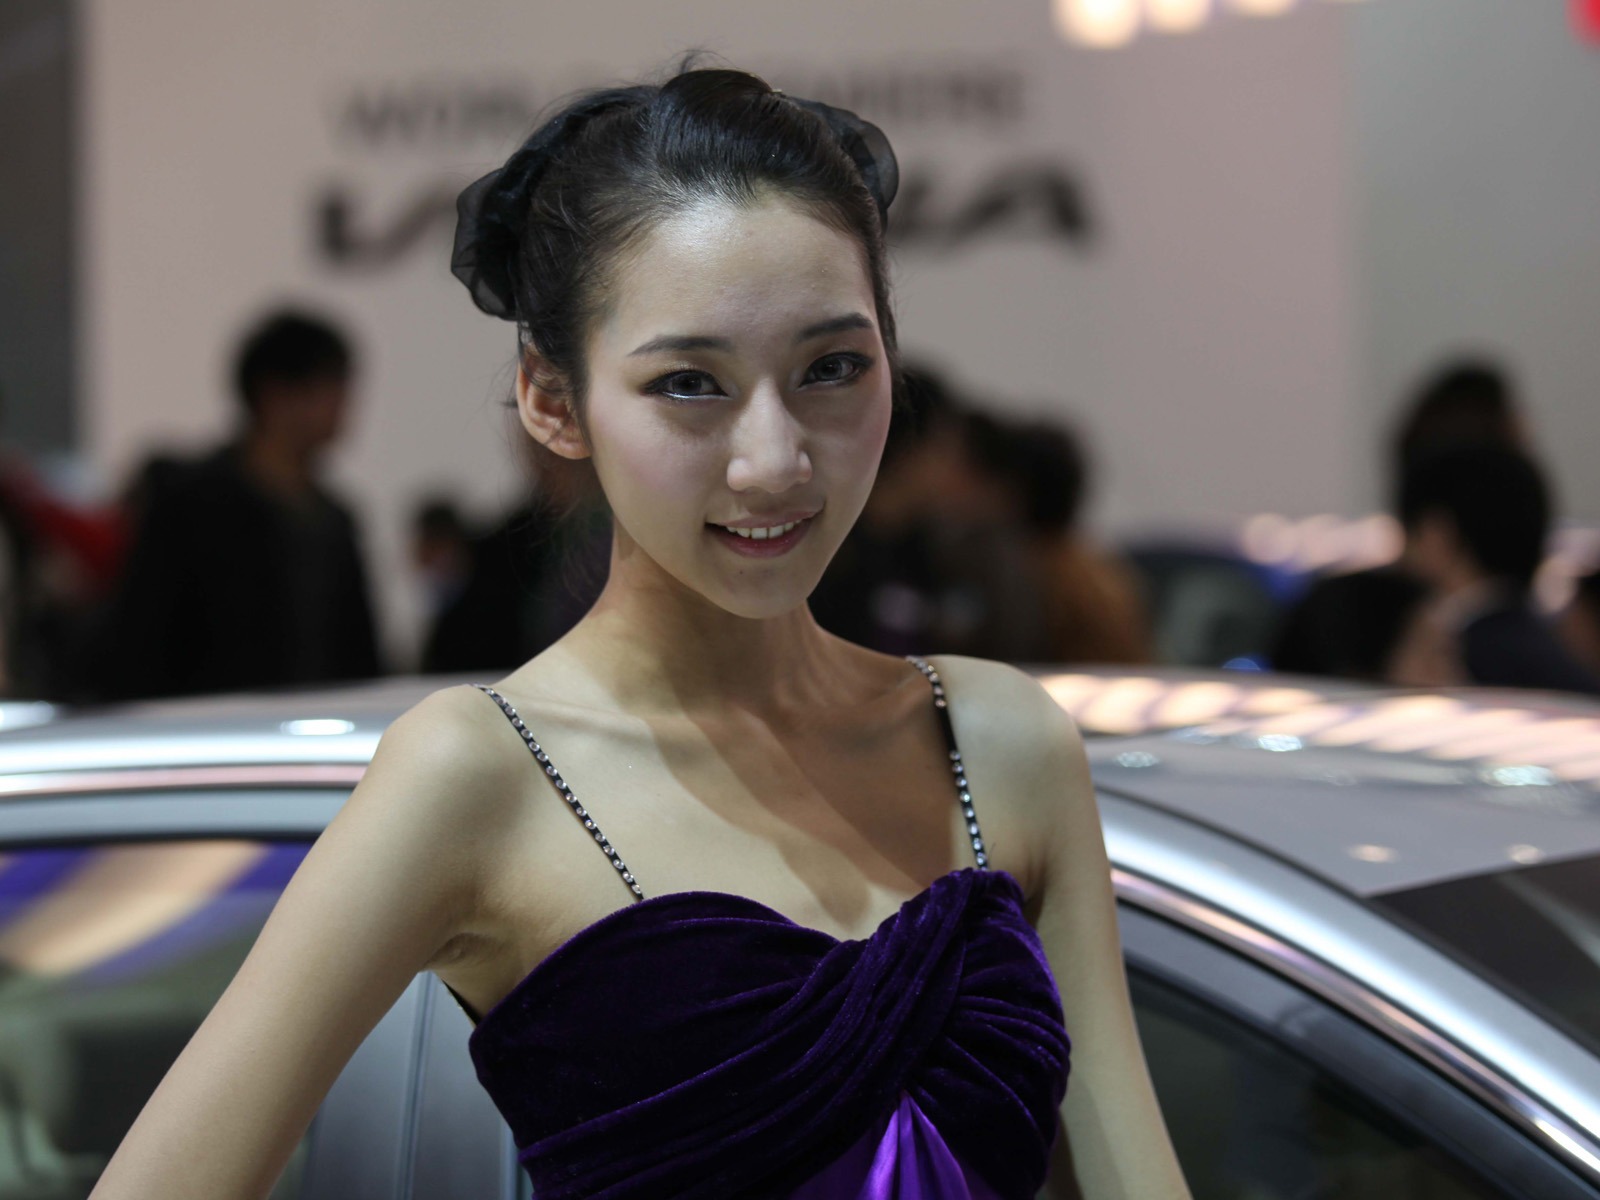 2010 v Pekingu Mezinárodním autosalonu krása (1) (vítr honí mraky práce) #21 - 1600x1200